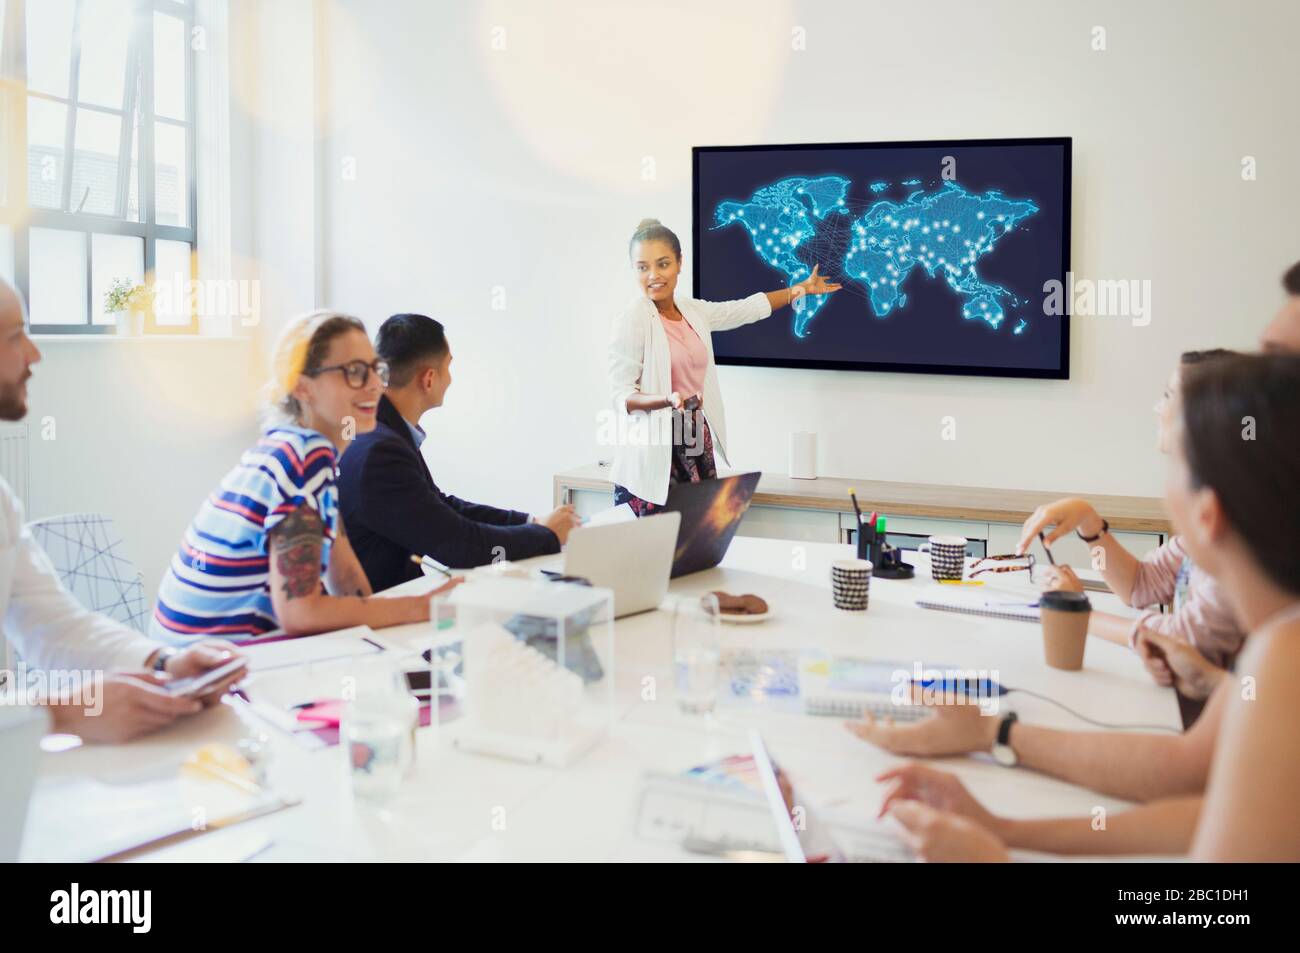 Designerin auf Fernsehbildschirm führt Konferenzraum-Meeting durch Stockfoto